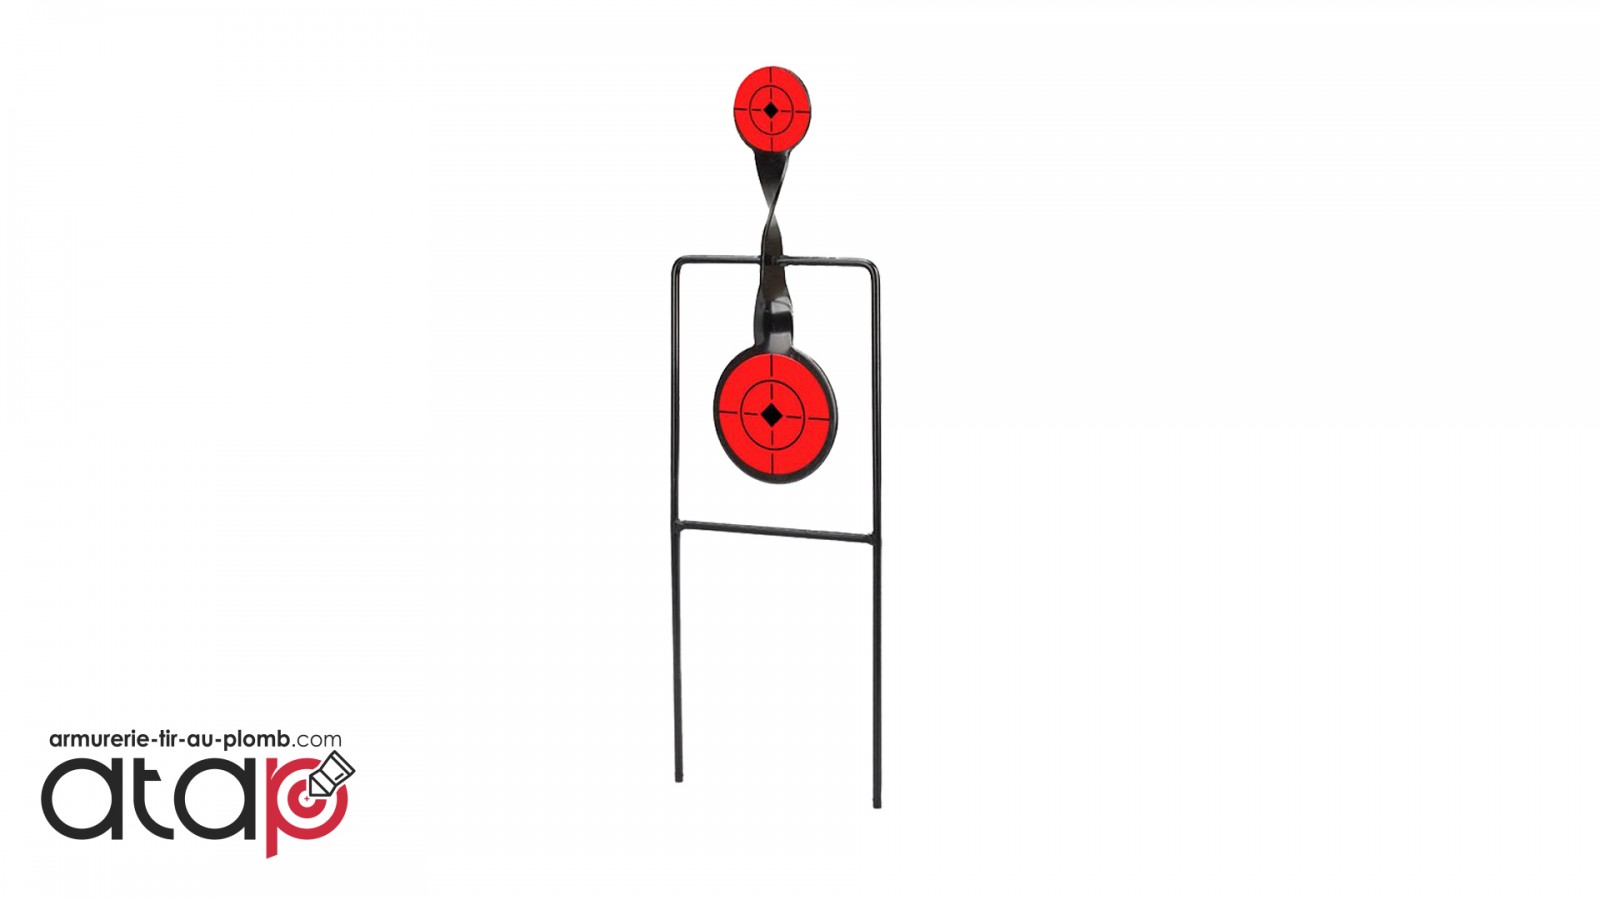 Cible de tir 3 objectifs de diamètres différents pour .22 LR